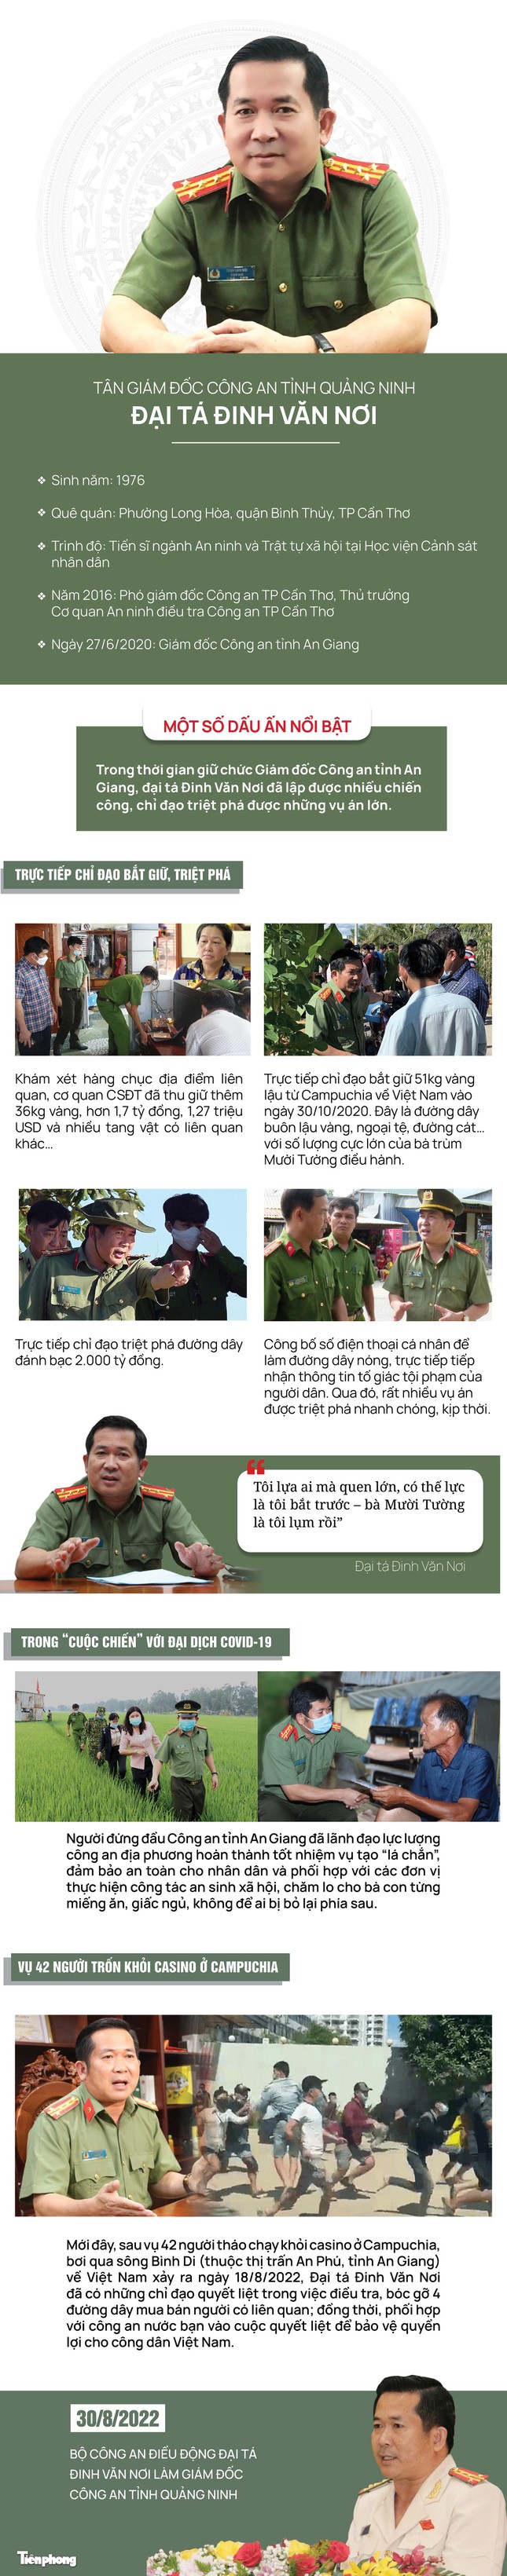 Đại tá Đinh Văn Nơi tham gia Ban Thường vụ Đảng ủy Công an tỉnh Quảng Ninh - Ảnh 1.